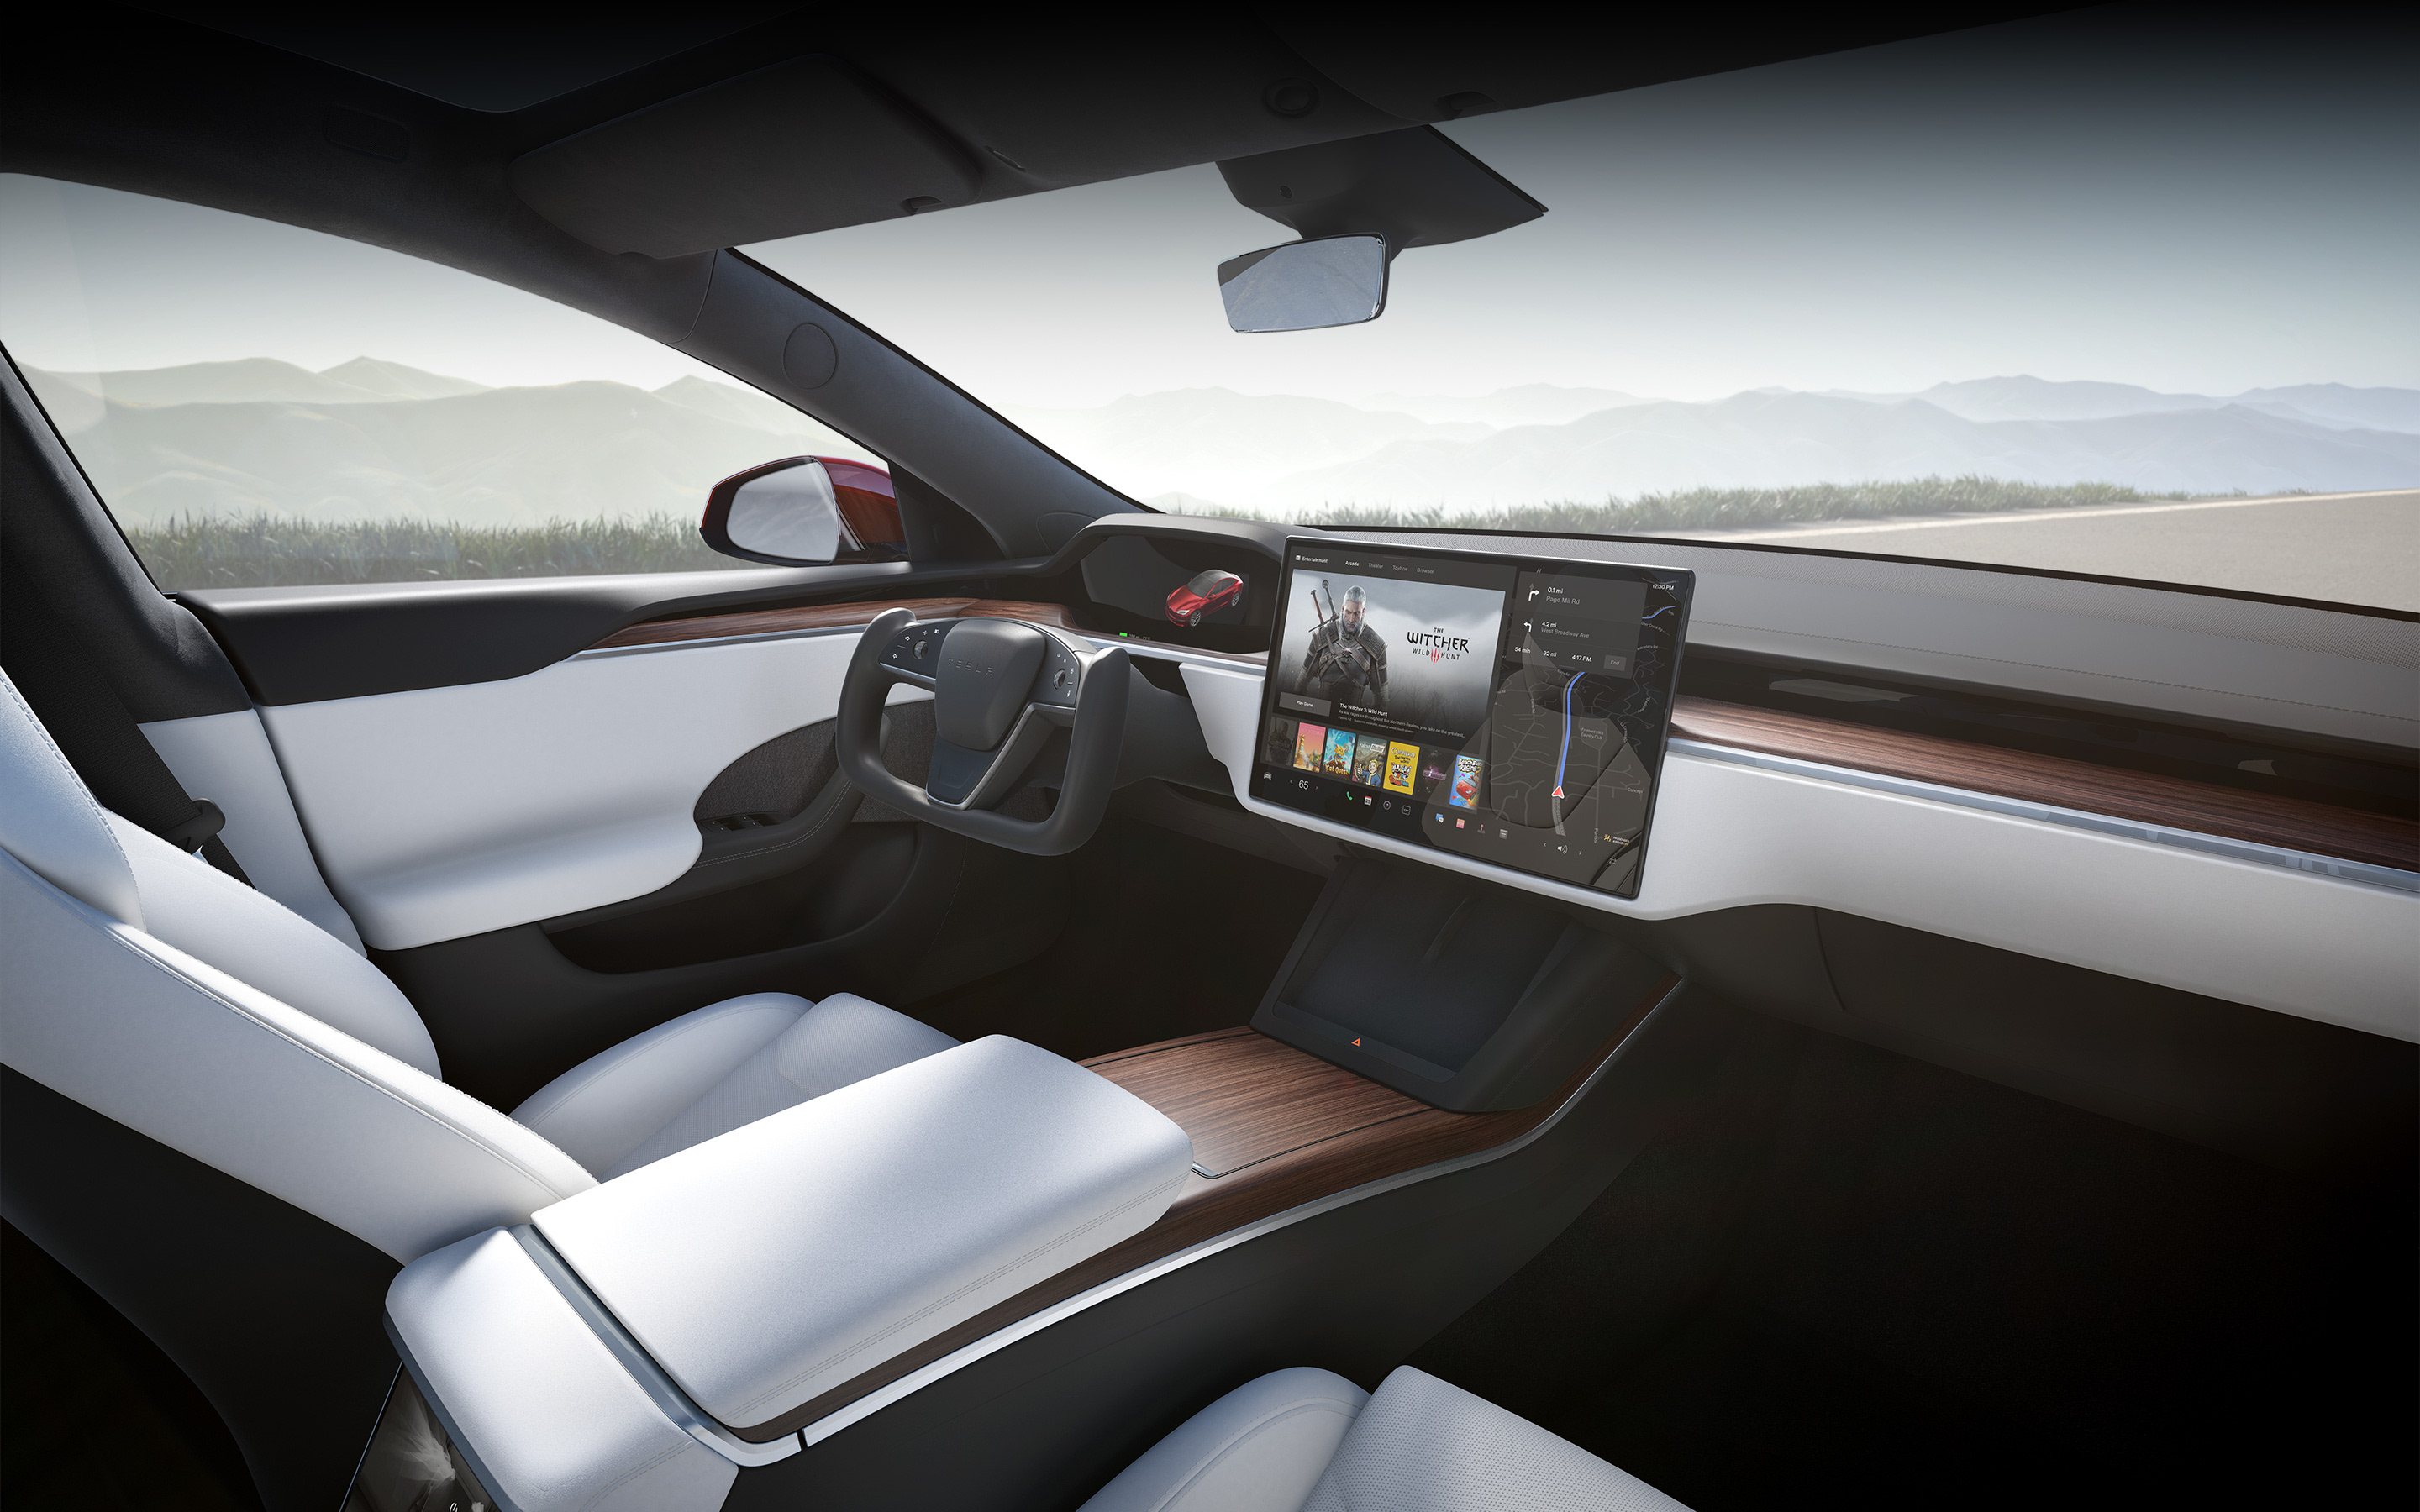 Model S con interior blanco desde el punto de vista del asiento del pasajero con el foco puesto en la pantalla táctil de infoentretenimiento